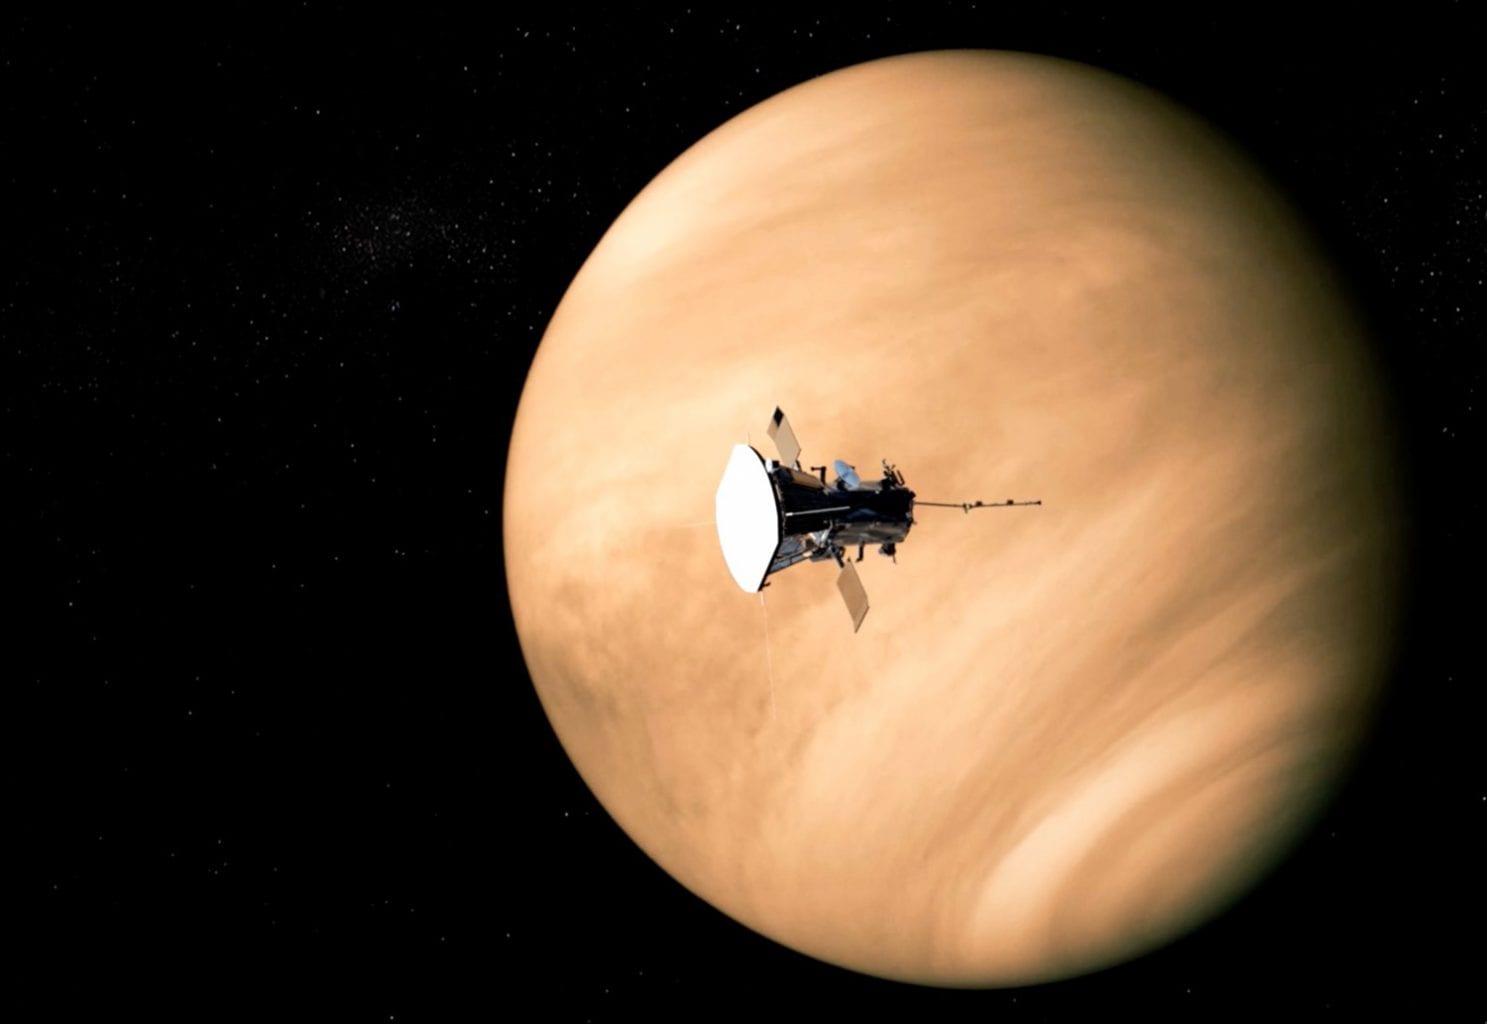 Umjetnikov dojam solarne sonde Parker tijekom leta u blizini Venere. Tijekom njihovog posljednjeg susreta, sonda je otkrila čudne radio emisije s Venere koje sugeriraju da je ušla u njenu atmosferu. Izvor: Franklin Institute / NASA